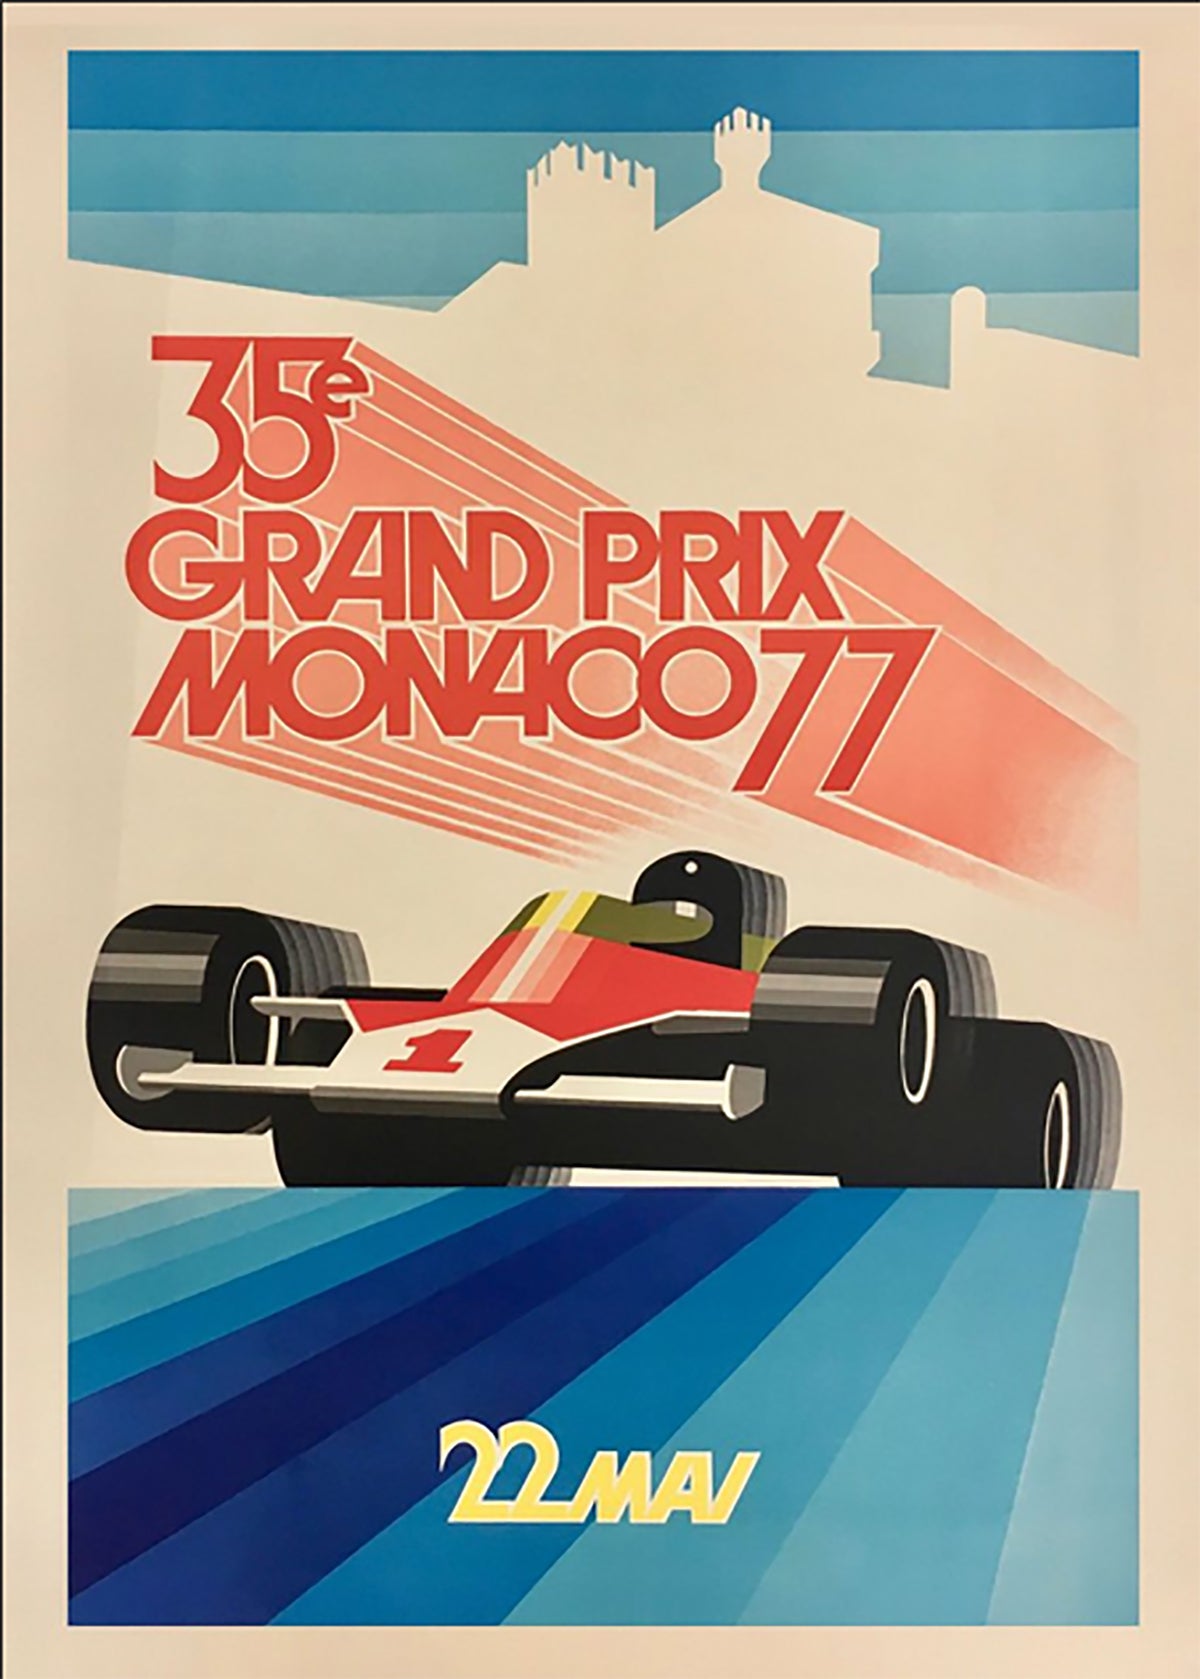 TPFLiving Poster Leinwand / Berühmte Rennen - Vintage - 7. Großer Preis von Monaco 22. April 1935 / Verschiedene Größen - OHNE Rahmen - Modell 16